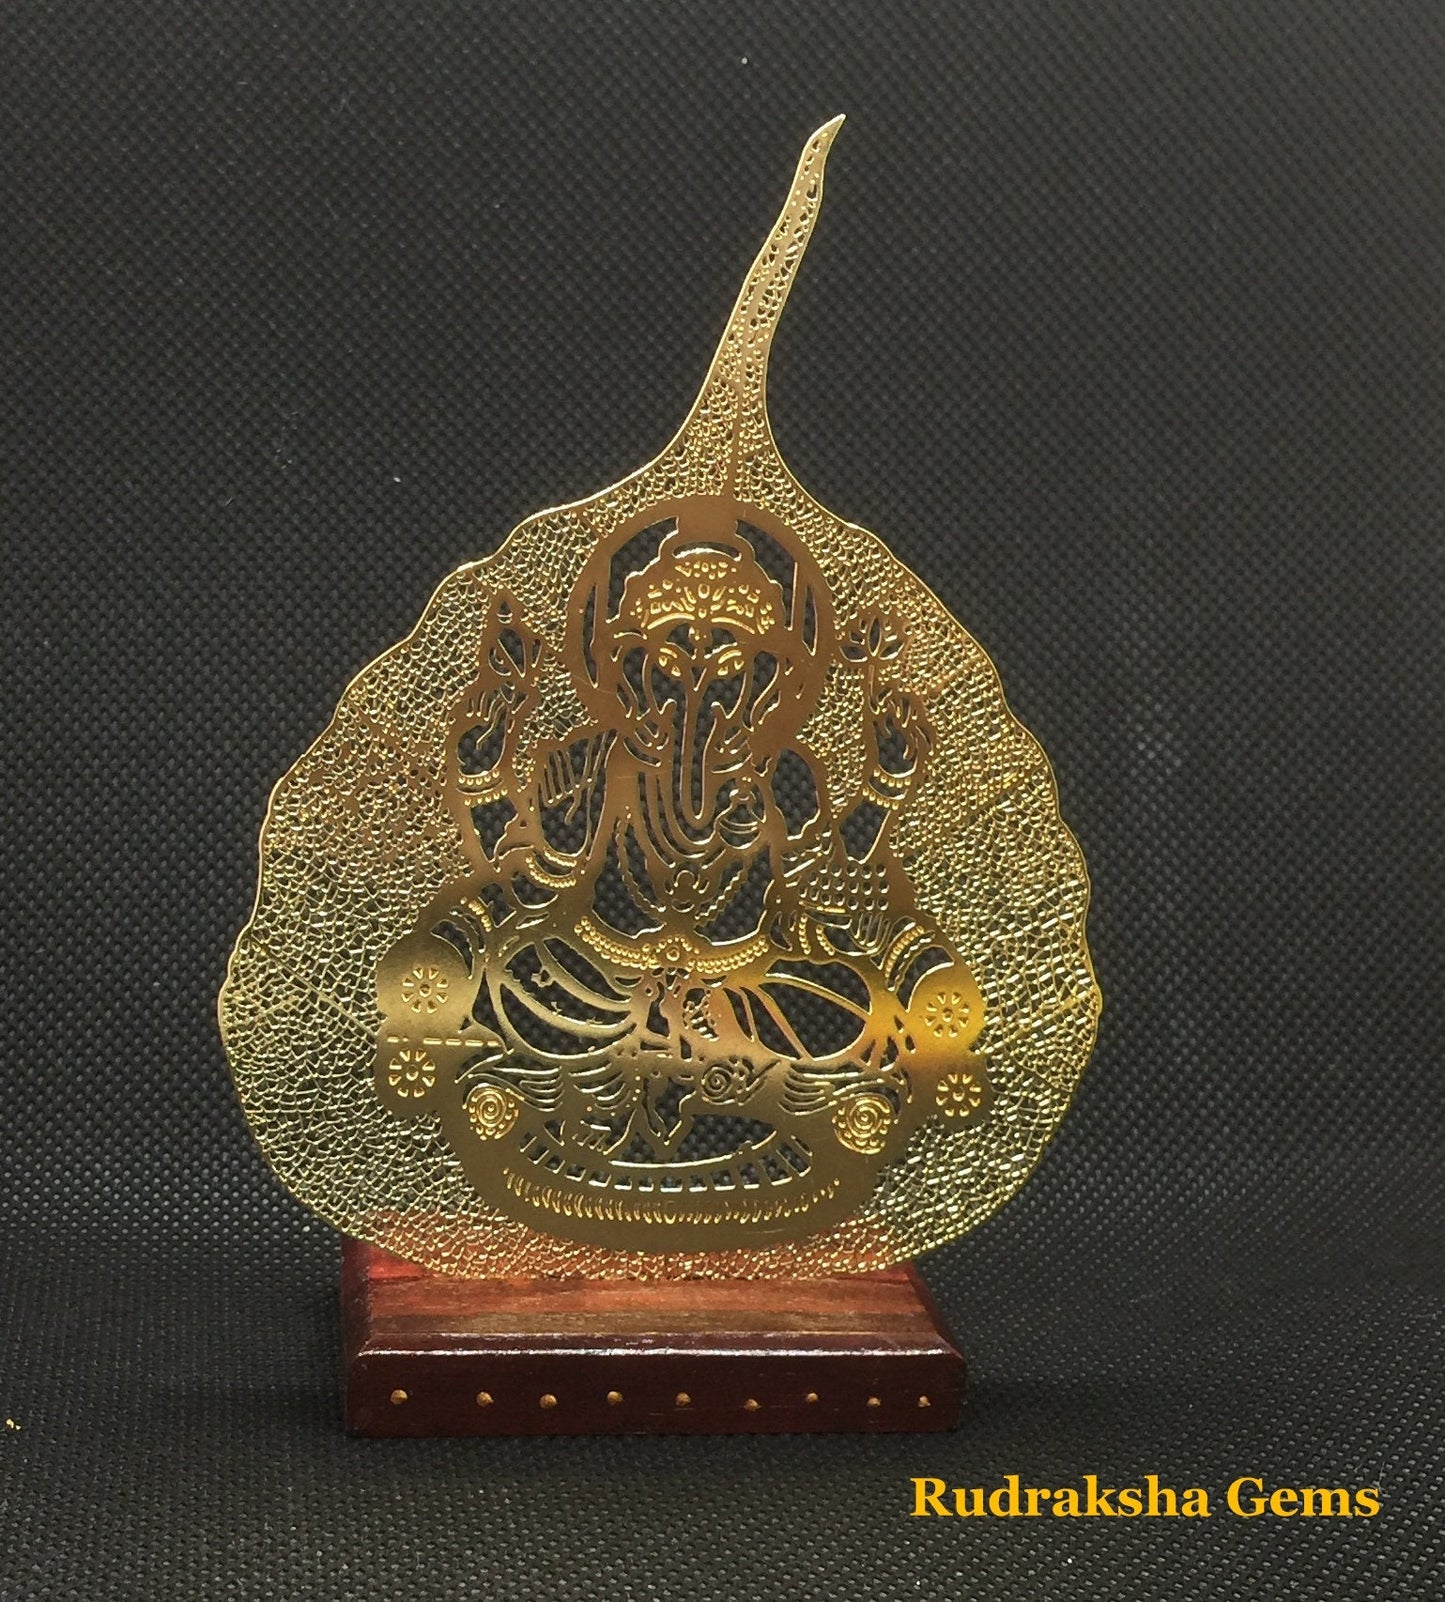 Ganesha Metal Leaf for meditation, healing and Reiki - Metal carved Leaf Ganesh - Can be used as Tea Light Candle Holder - Gift for Him/Her